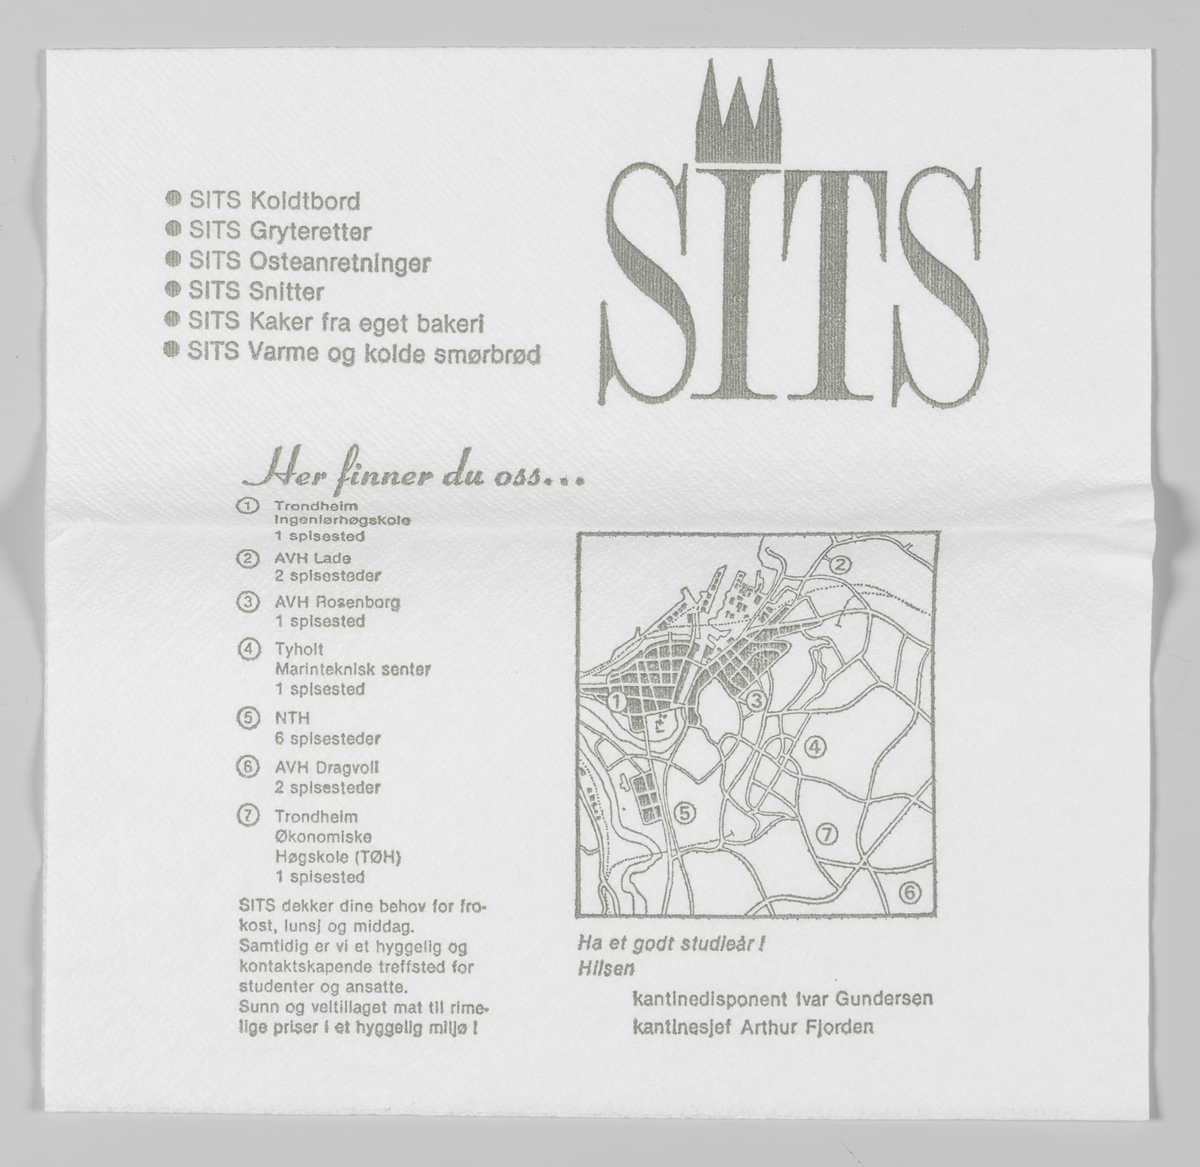 Tre tårne og en reklametekst ofr SITS spisesteder i Trondheim og et kart hvor disse er tegnet inn.

SIT er Studentsamskipnaden i Trondheim